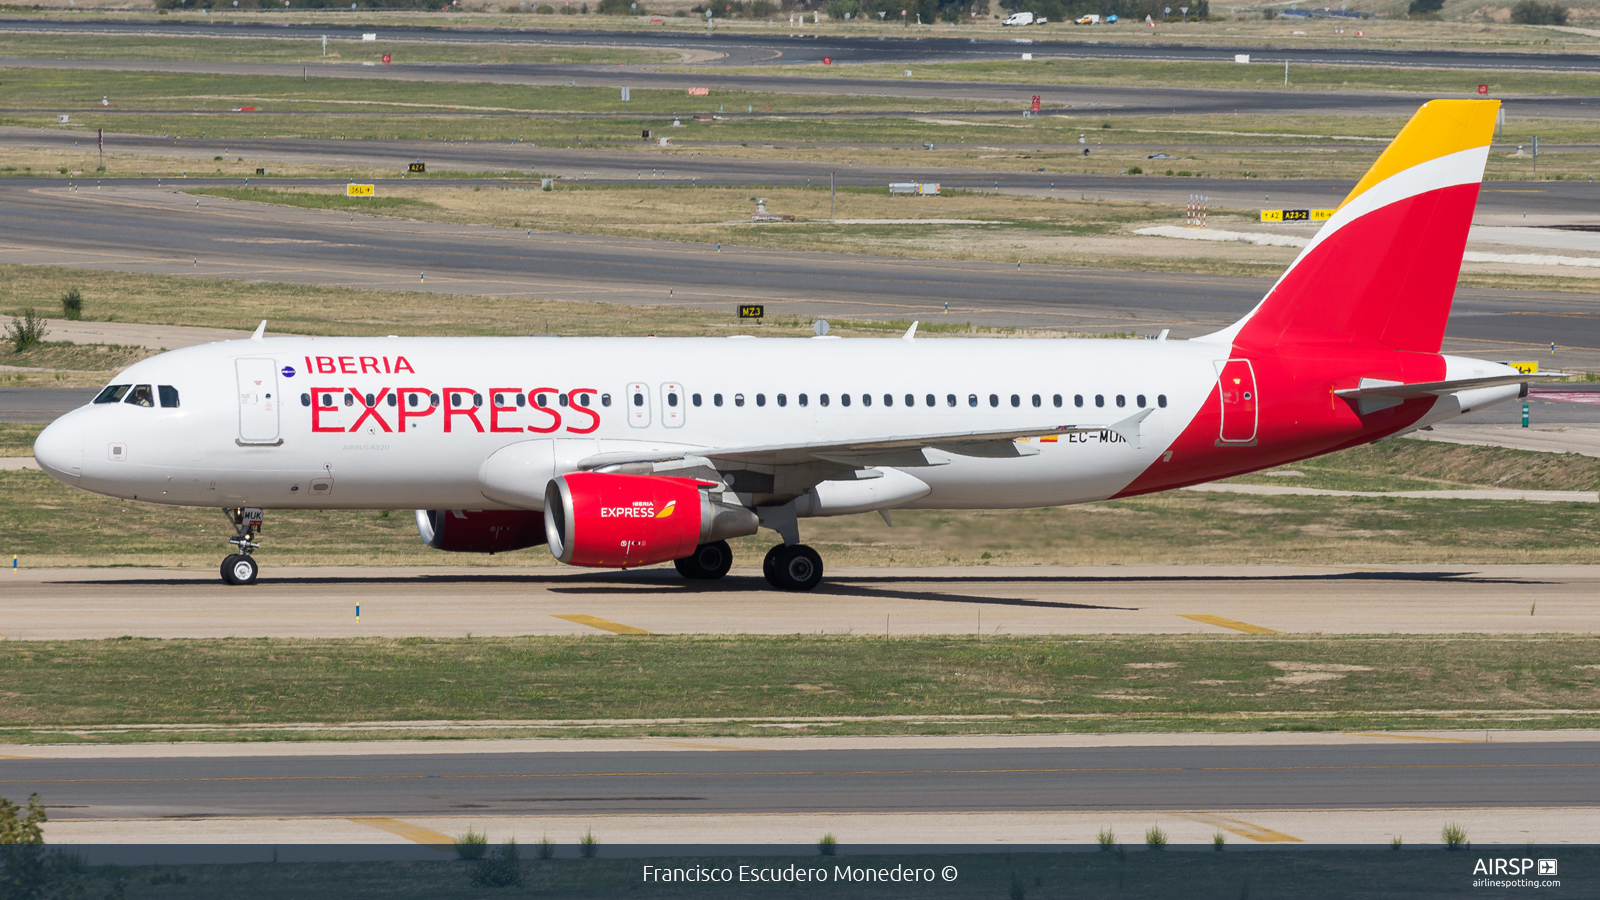 Iberia Express  Airbus A320  EC-MUK